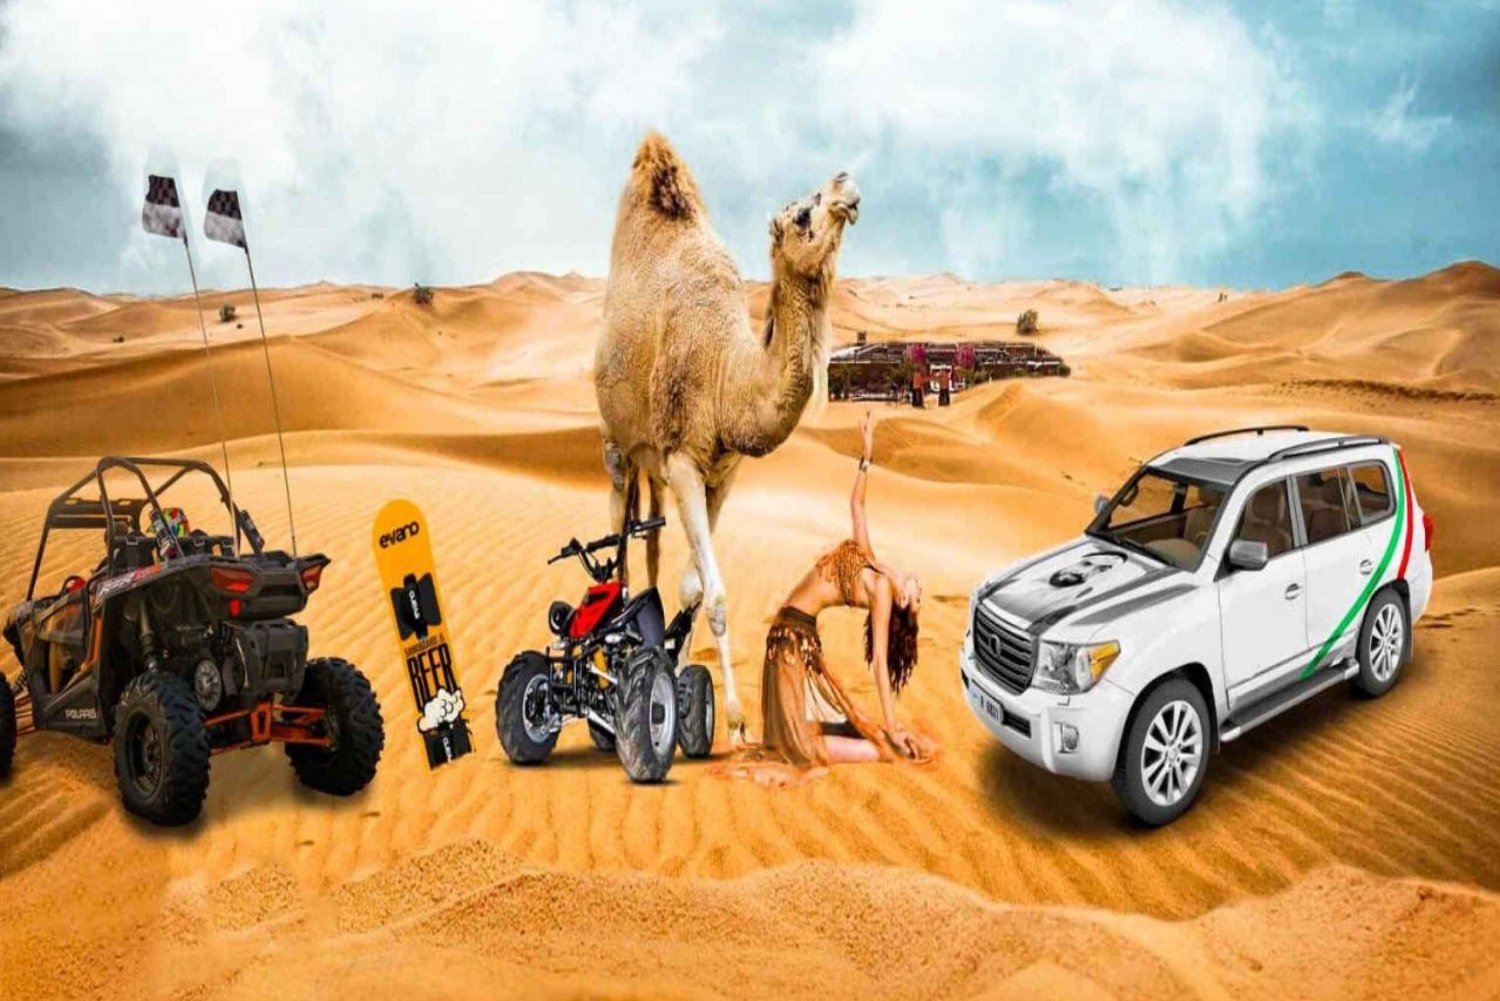 Safaris por el desierto en Dubai, Sandboard, barbacoa, paseo en camello y espectáculos